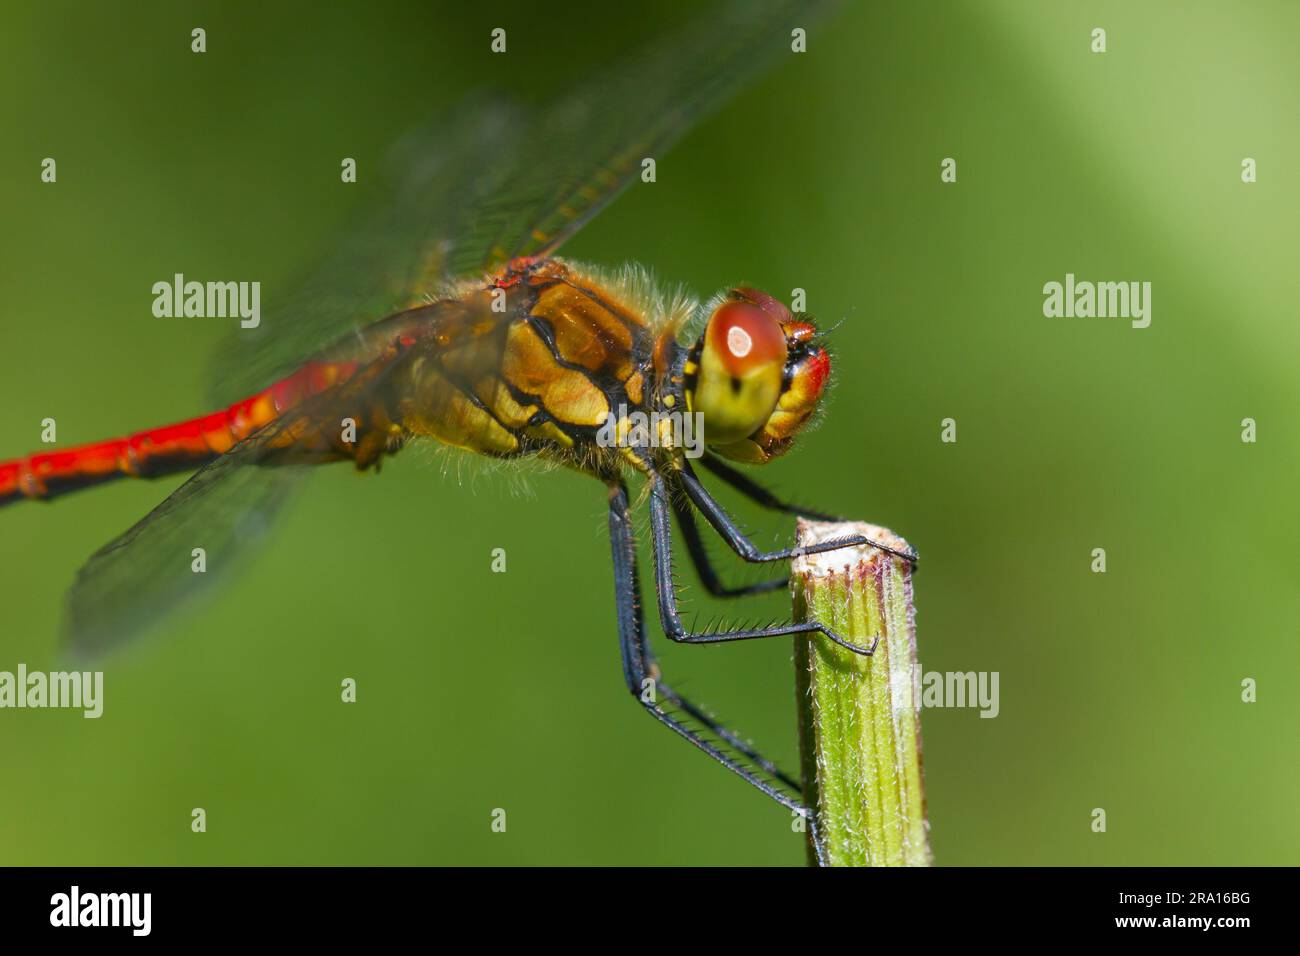 Semaine nationale de la libellule - gros plan macro d'une libellule de Ruddy Darter, Sympetrum sanguineum. Helen Cowles / Alamy Banque D'Images